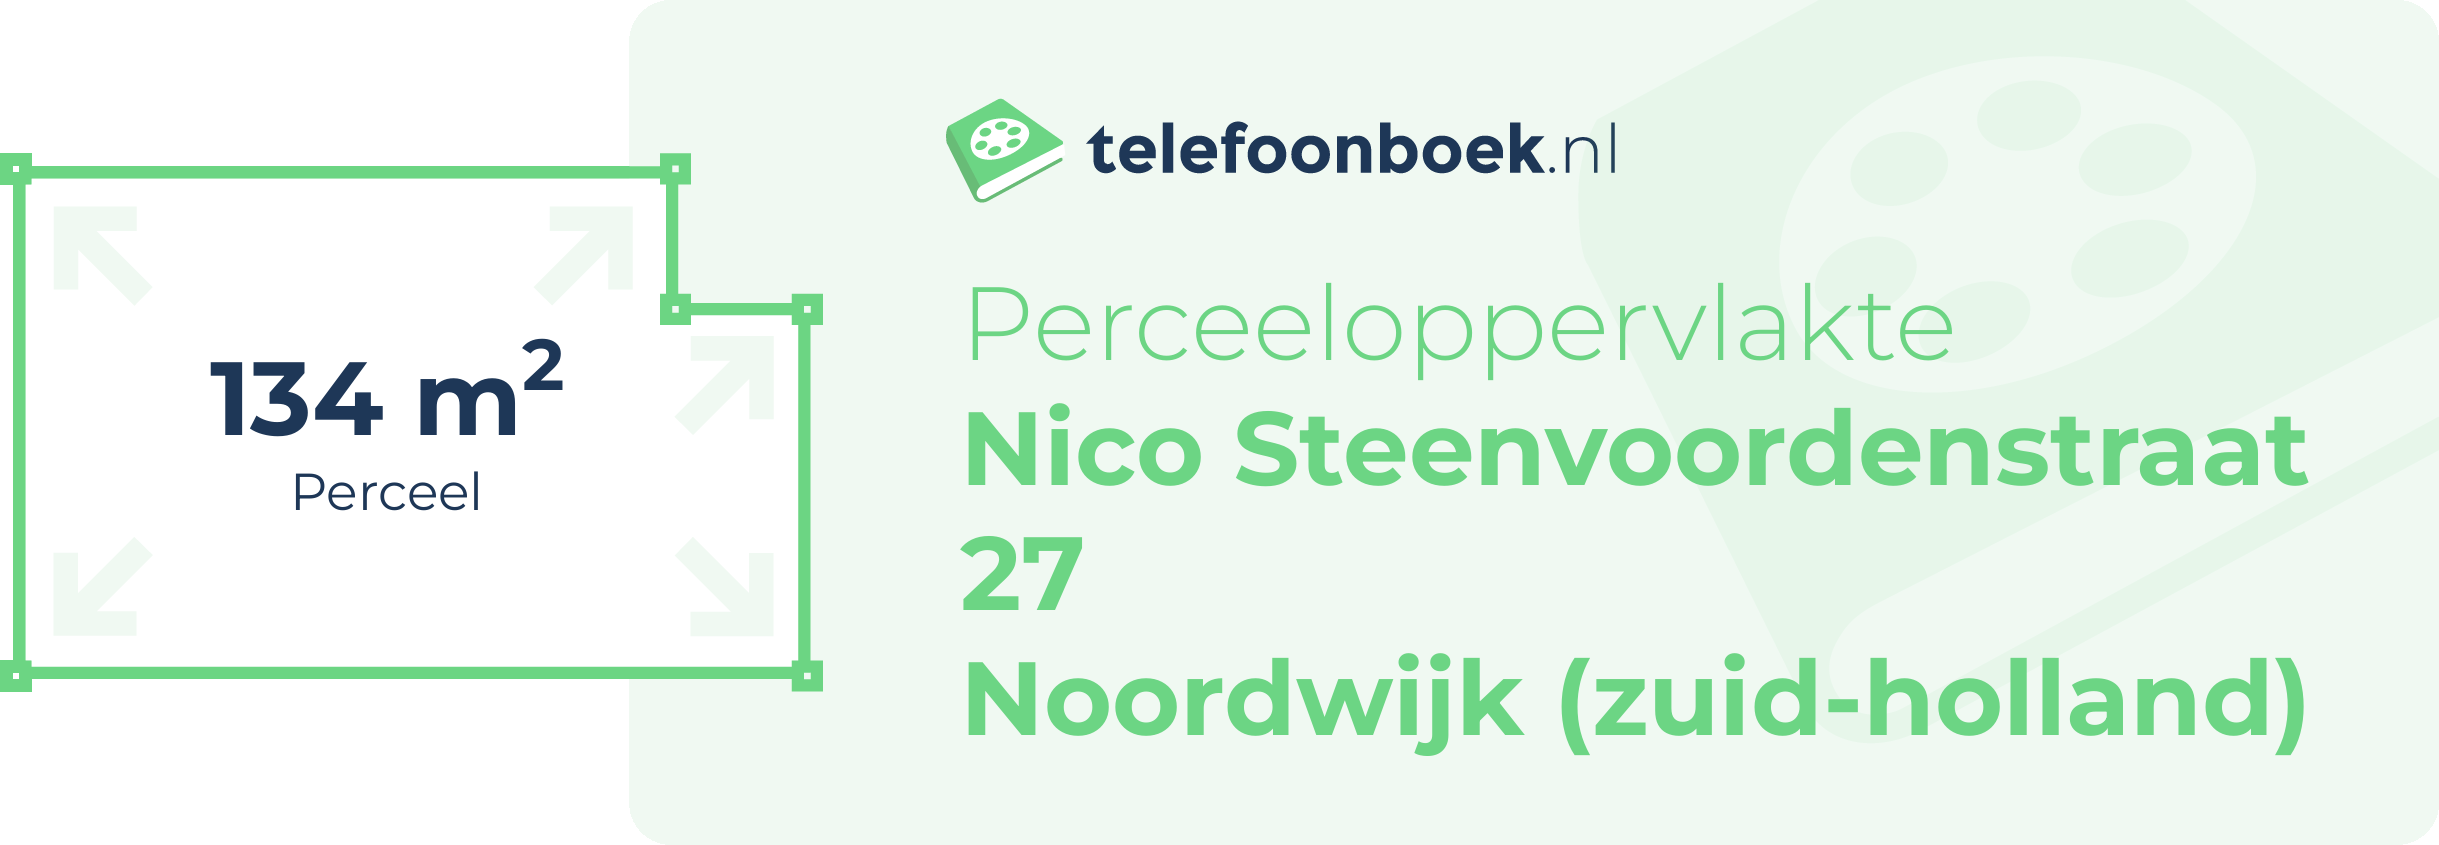 Perceeloppervlakte Nico Steenvoordenstraat 27 Noordwijk (Zuid-Holland)